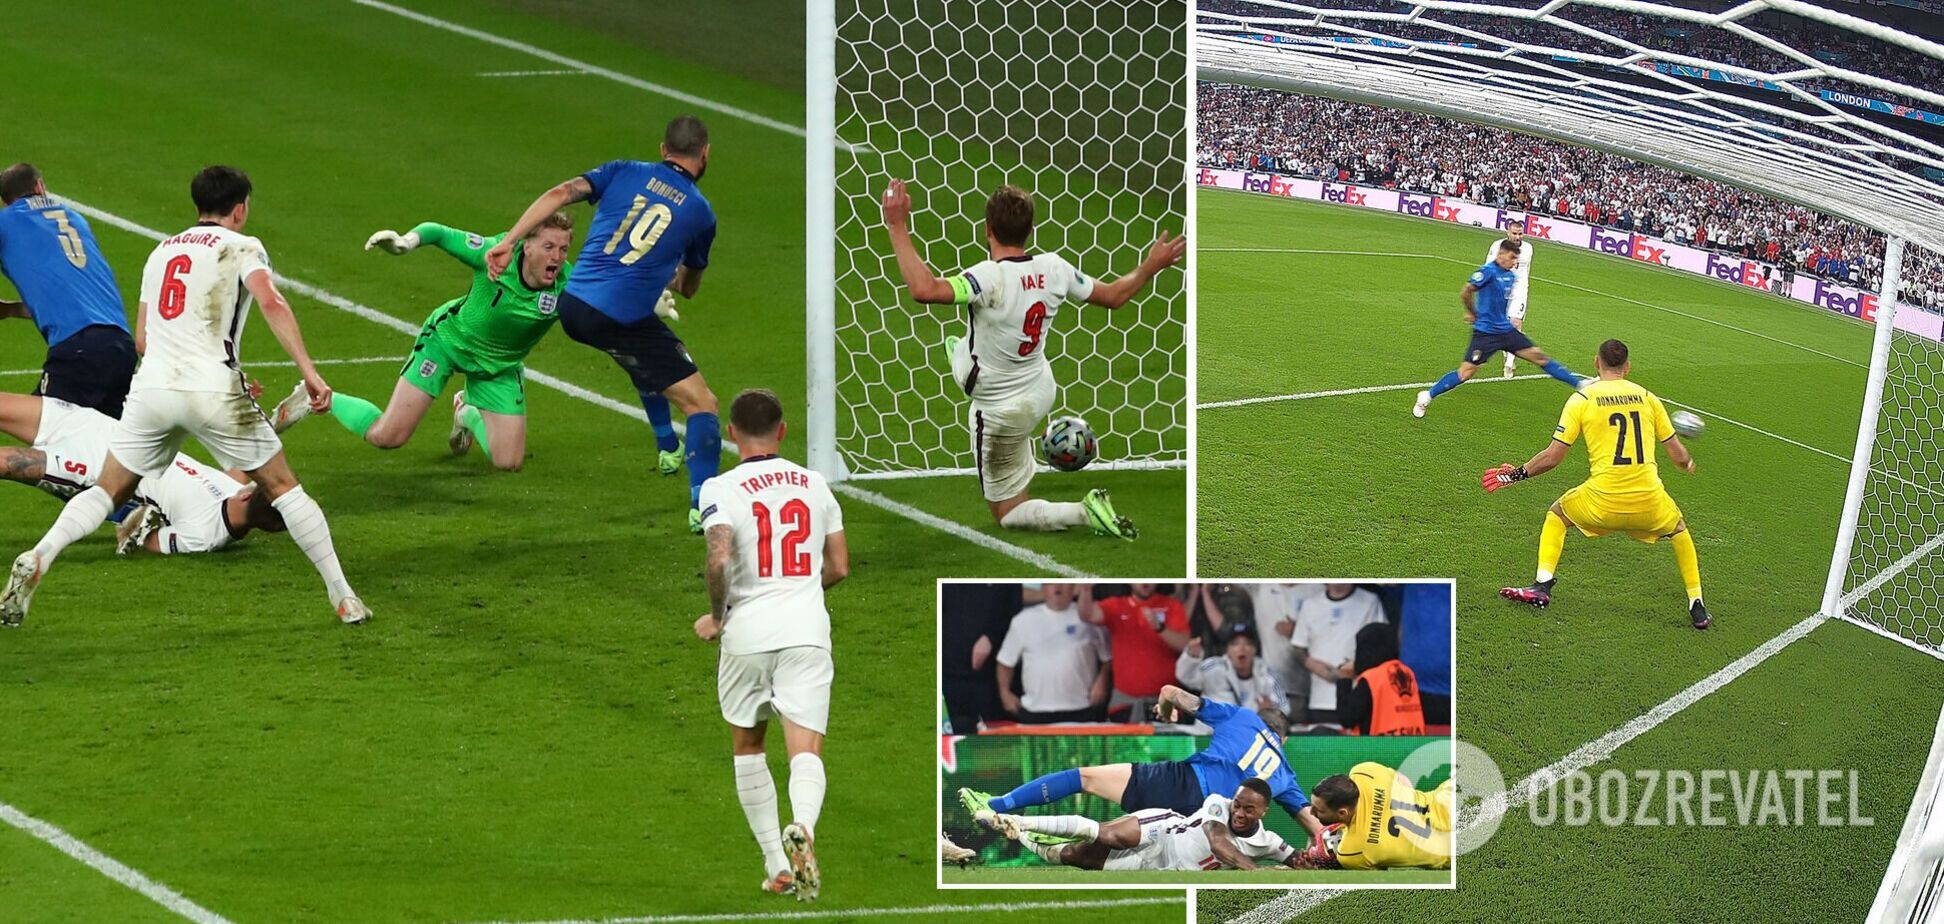 Италия и Англия играют в финале Евро-2020